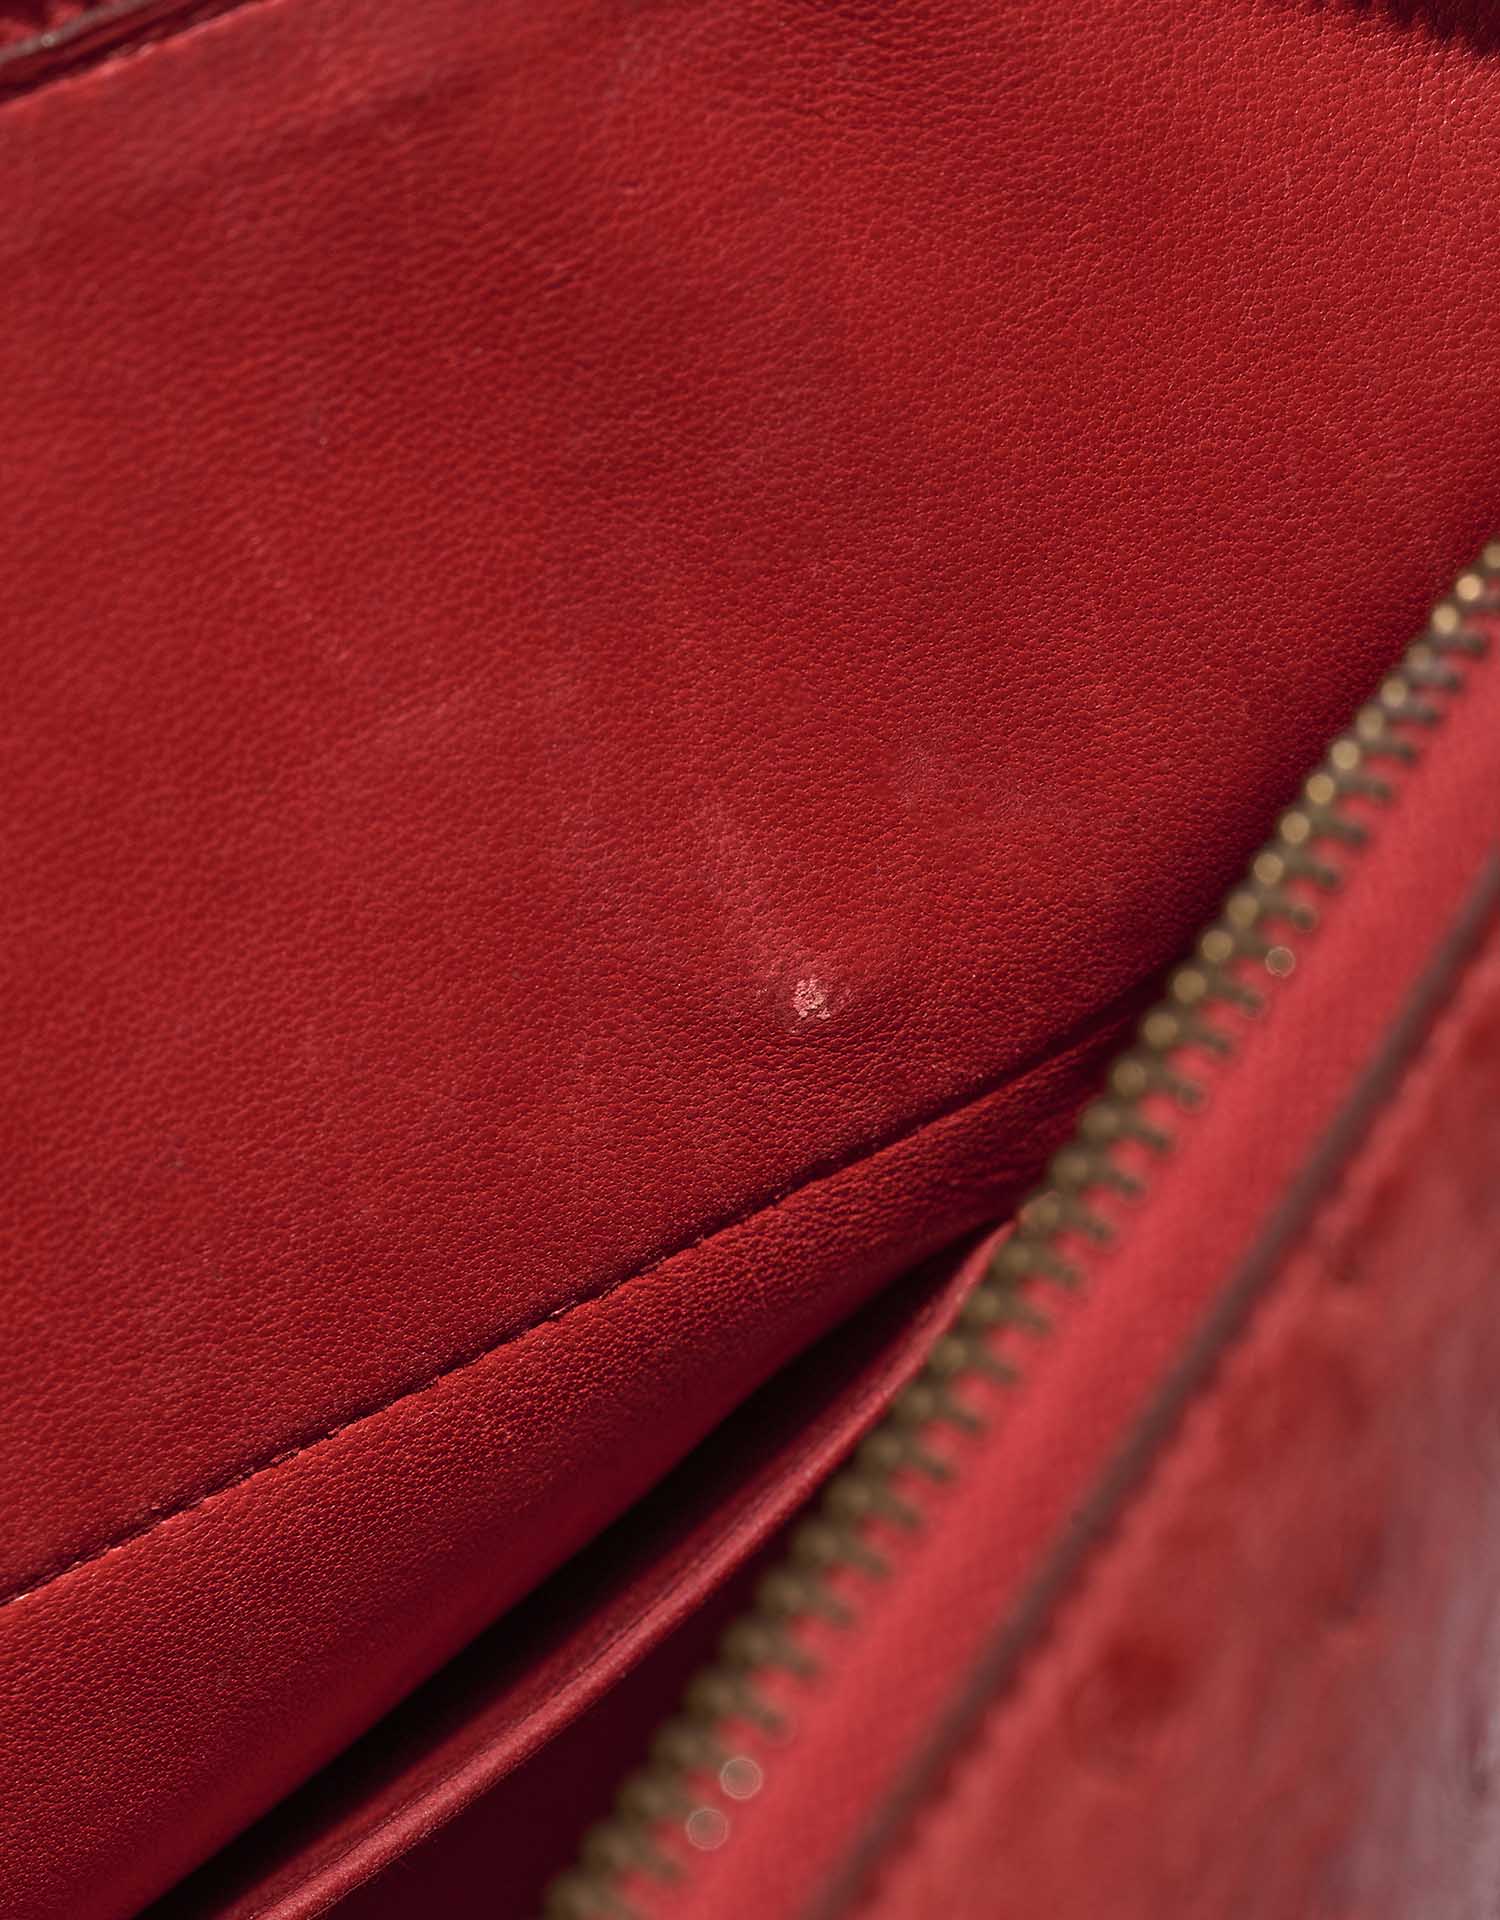 Hermès Bolide 27 RougeVif Gebrauchsspuren 3 | Verkaufen Sie Ihre Designertasche auf Saclab.com